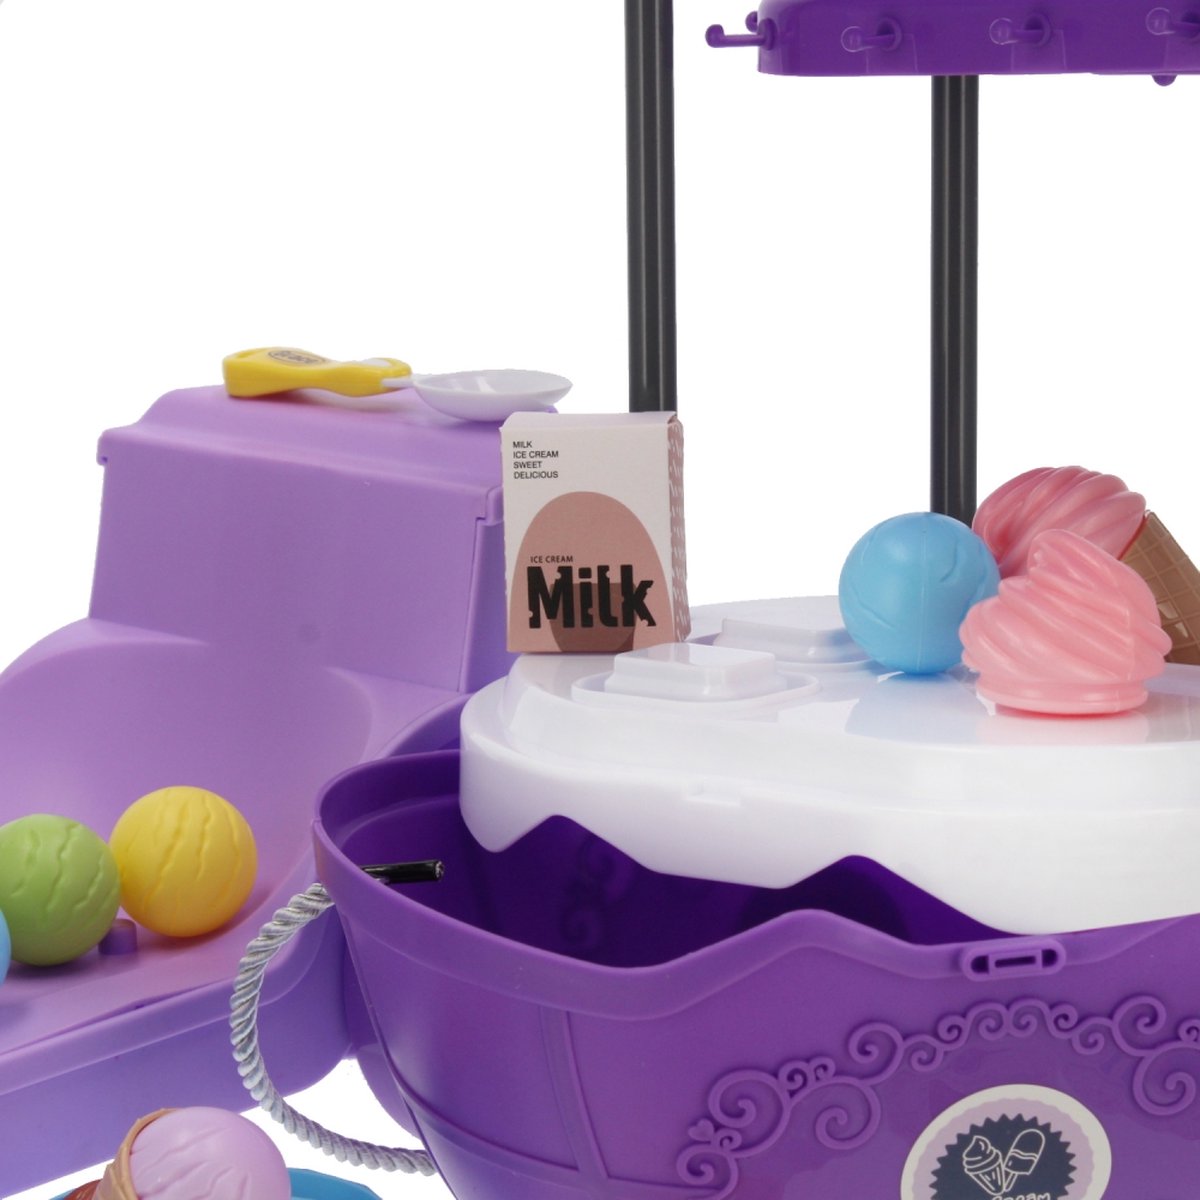 Ariko Spielzeugwagen Eisdielenwagen Shop 69 Teile - Softeis, italienisches Eis, Geschirr, Waffeln und vieles mehr - praktischer Koffer zum Mitnehmen mit Rollen